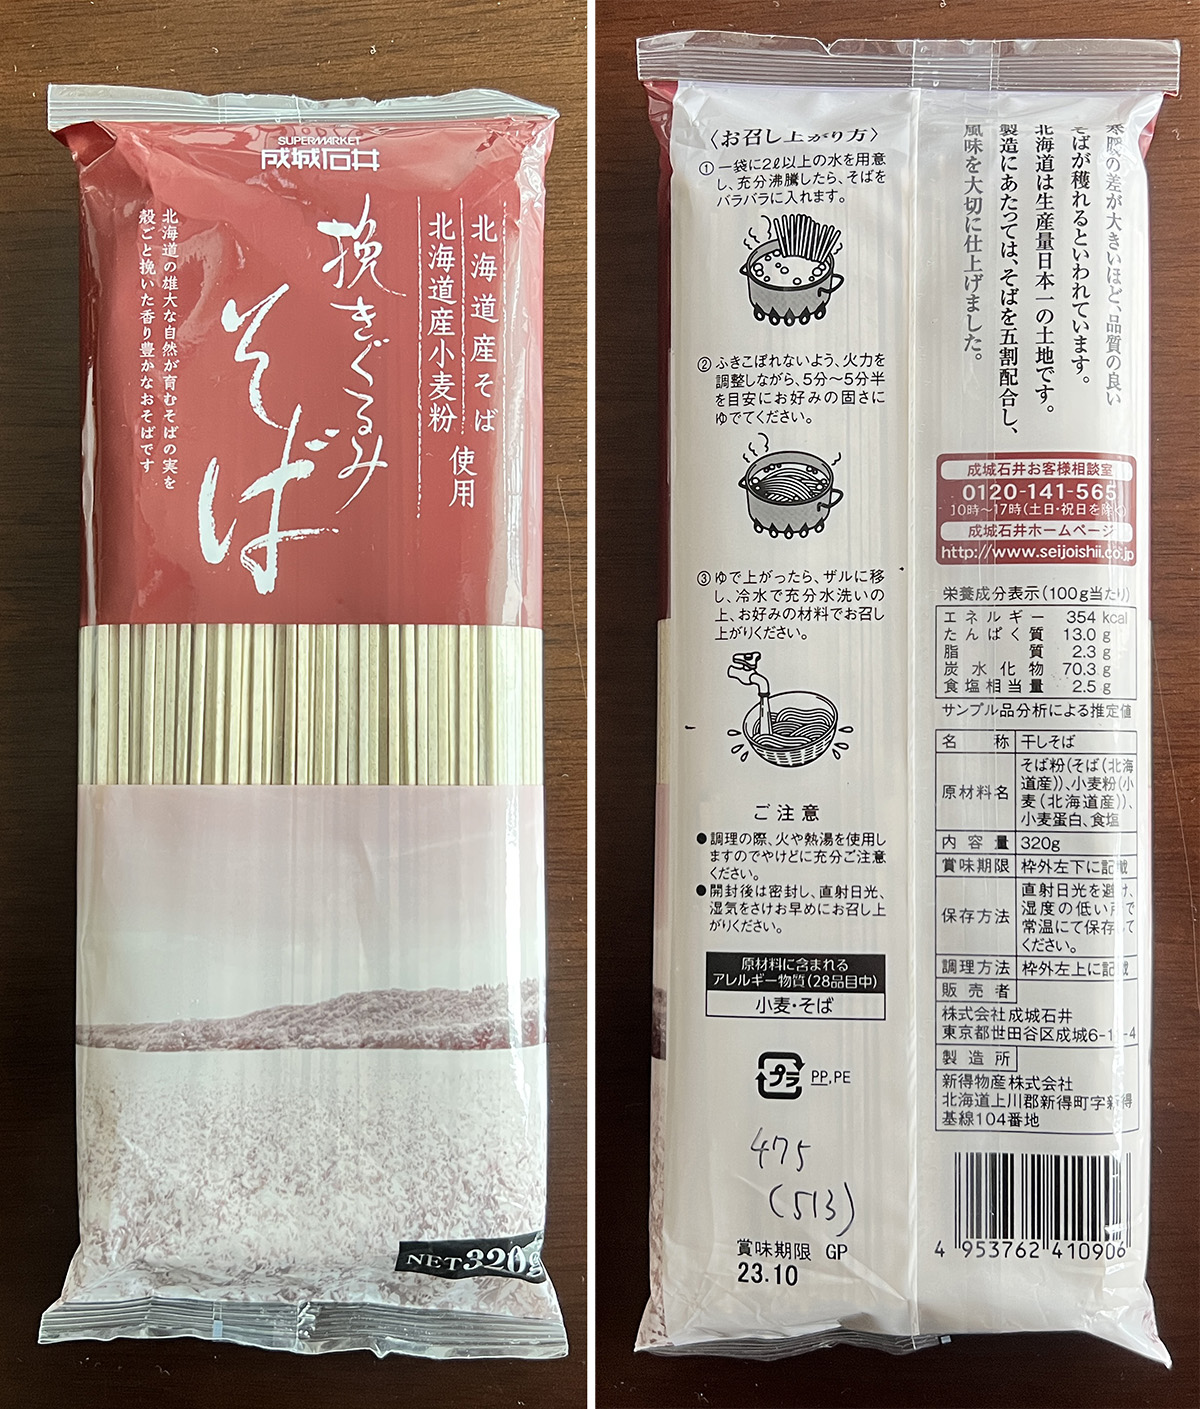 成城石井 挽きぐるみそば 北海道産そば粉・小麦粉使用 320g 1個 通販